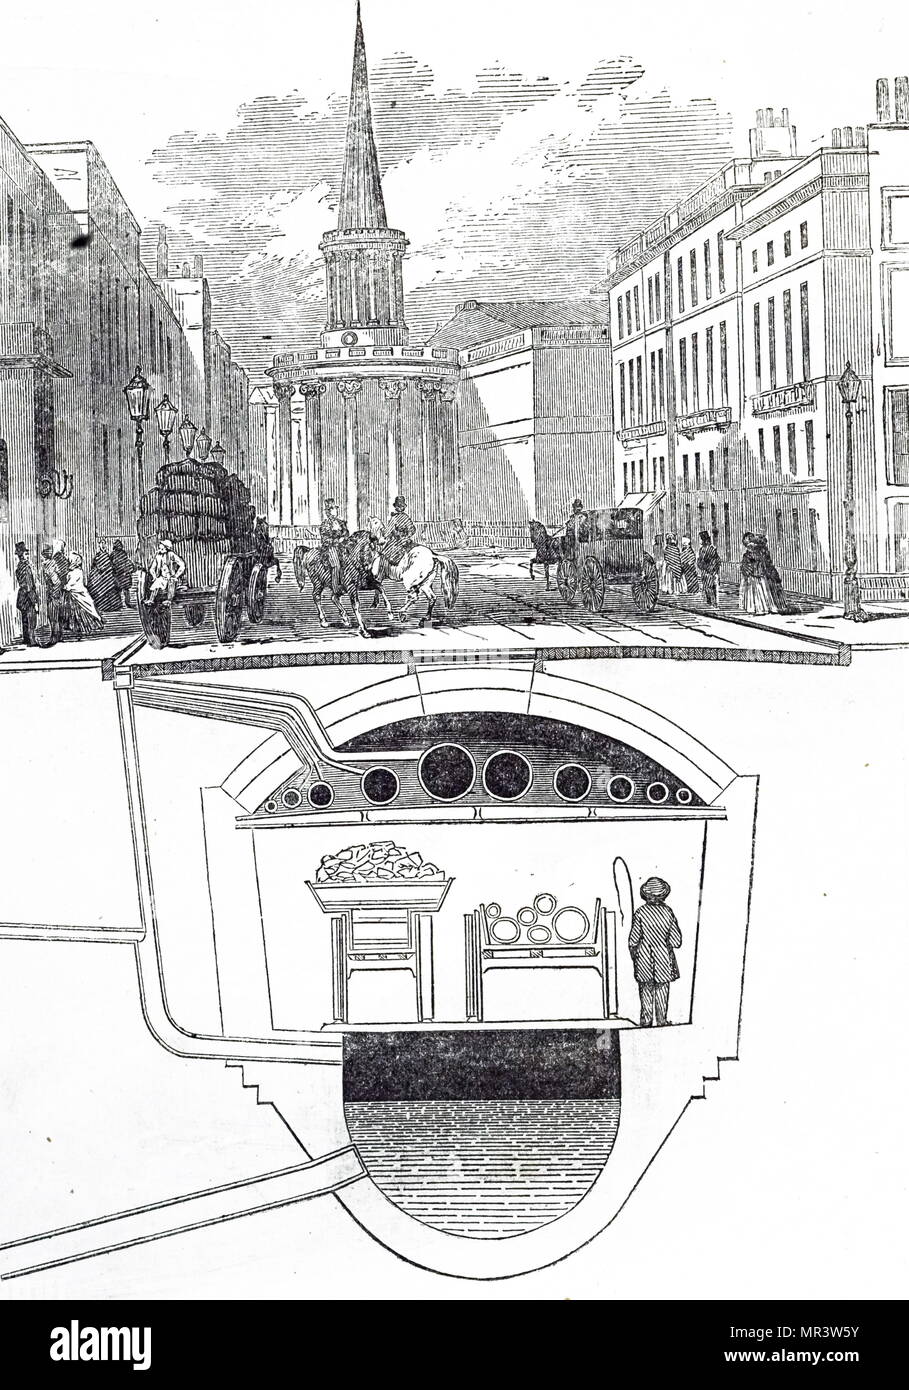 Ilustración mostrando un metro utilizado para llevar las cloacas, gas y agua. Vista transversal de la planeada del metro debajo de Holywell Street, Oxford. Fecha del siglo XIX Foto de stock